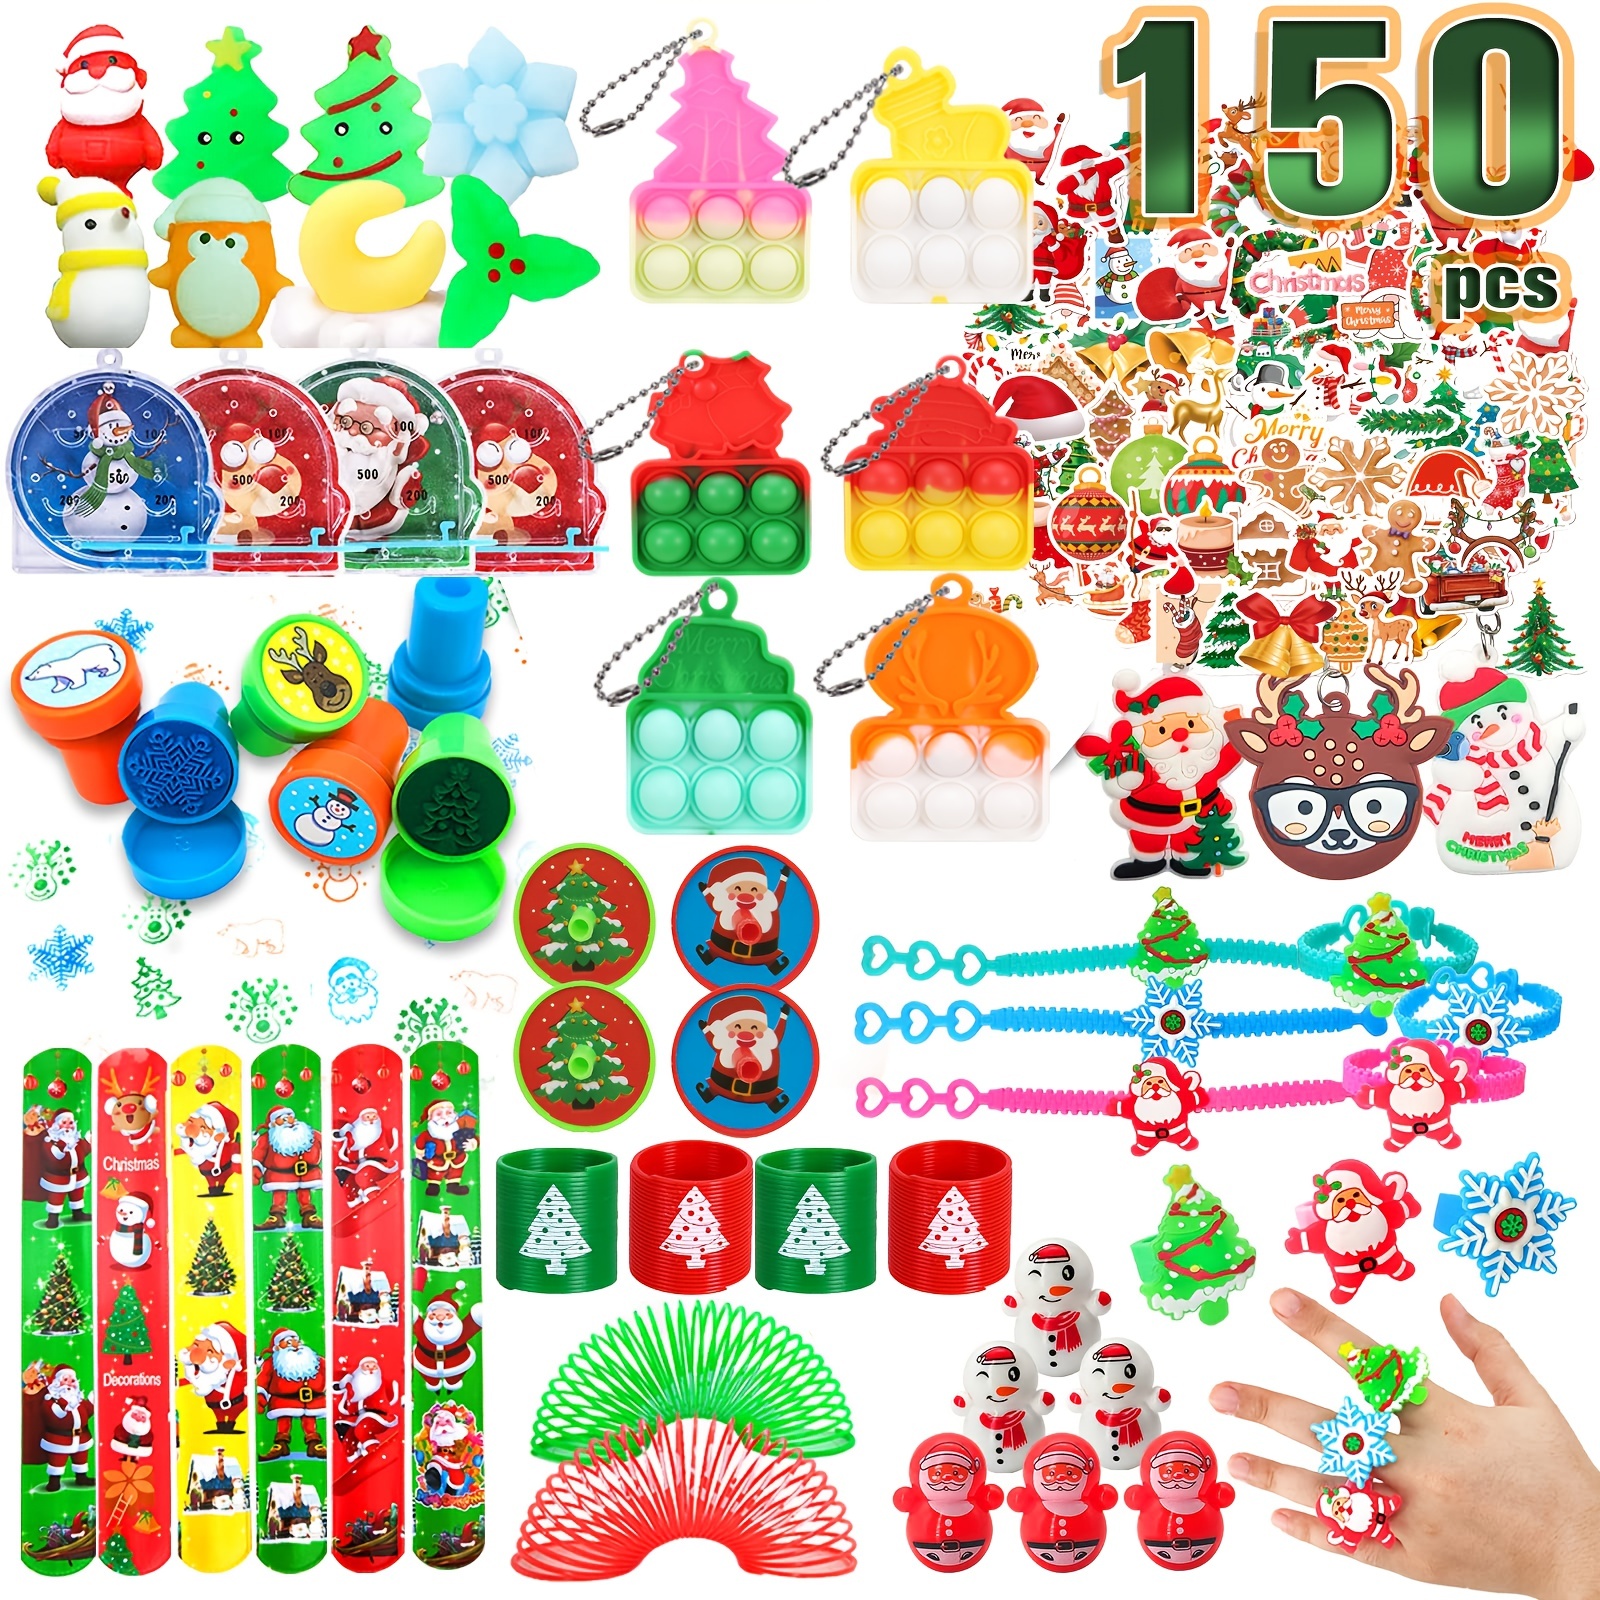 100 pcs Fidget Toys Pack, Party Favors For Kids 8-12 Mini Autism